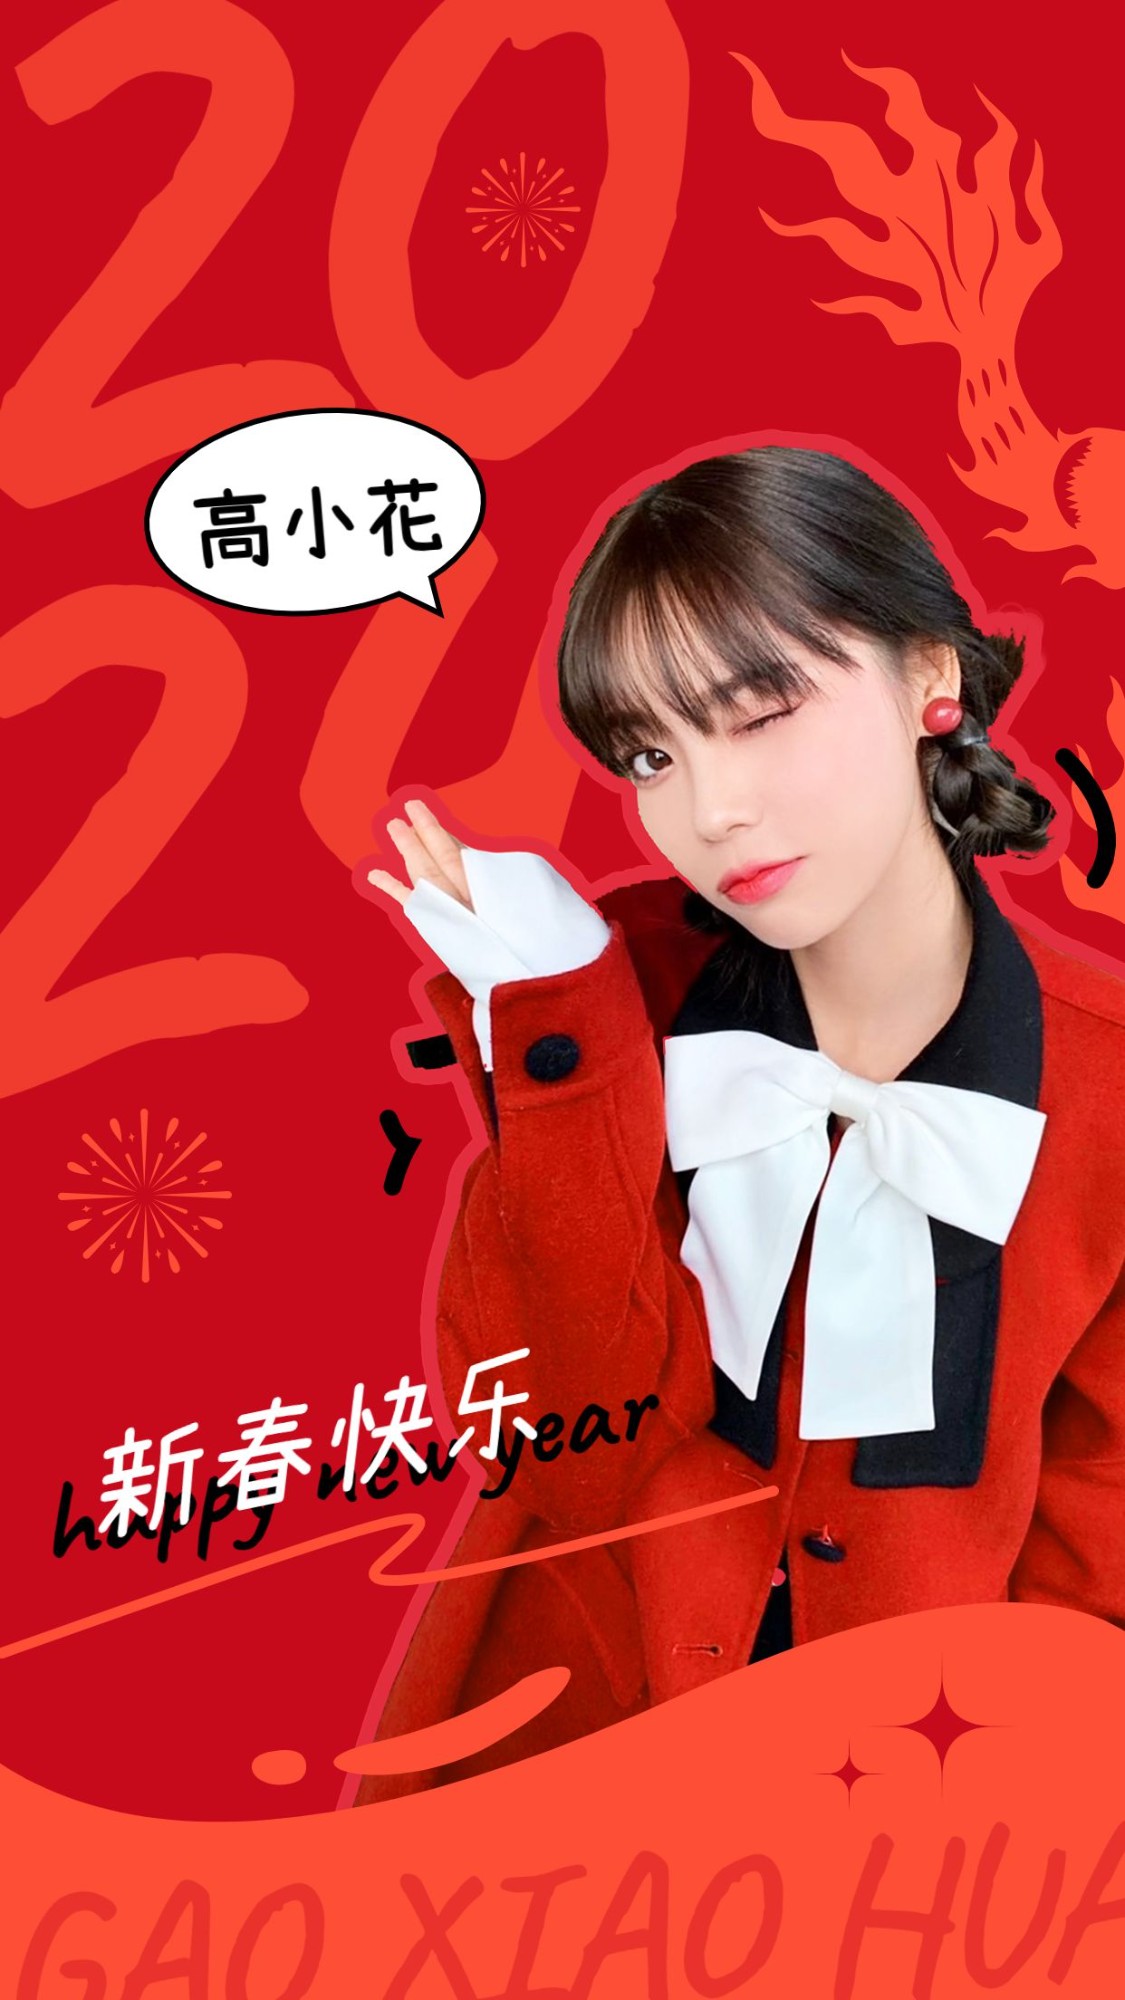 春节新年明星工作室祝福手机海报预览效果